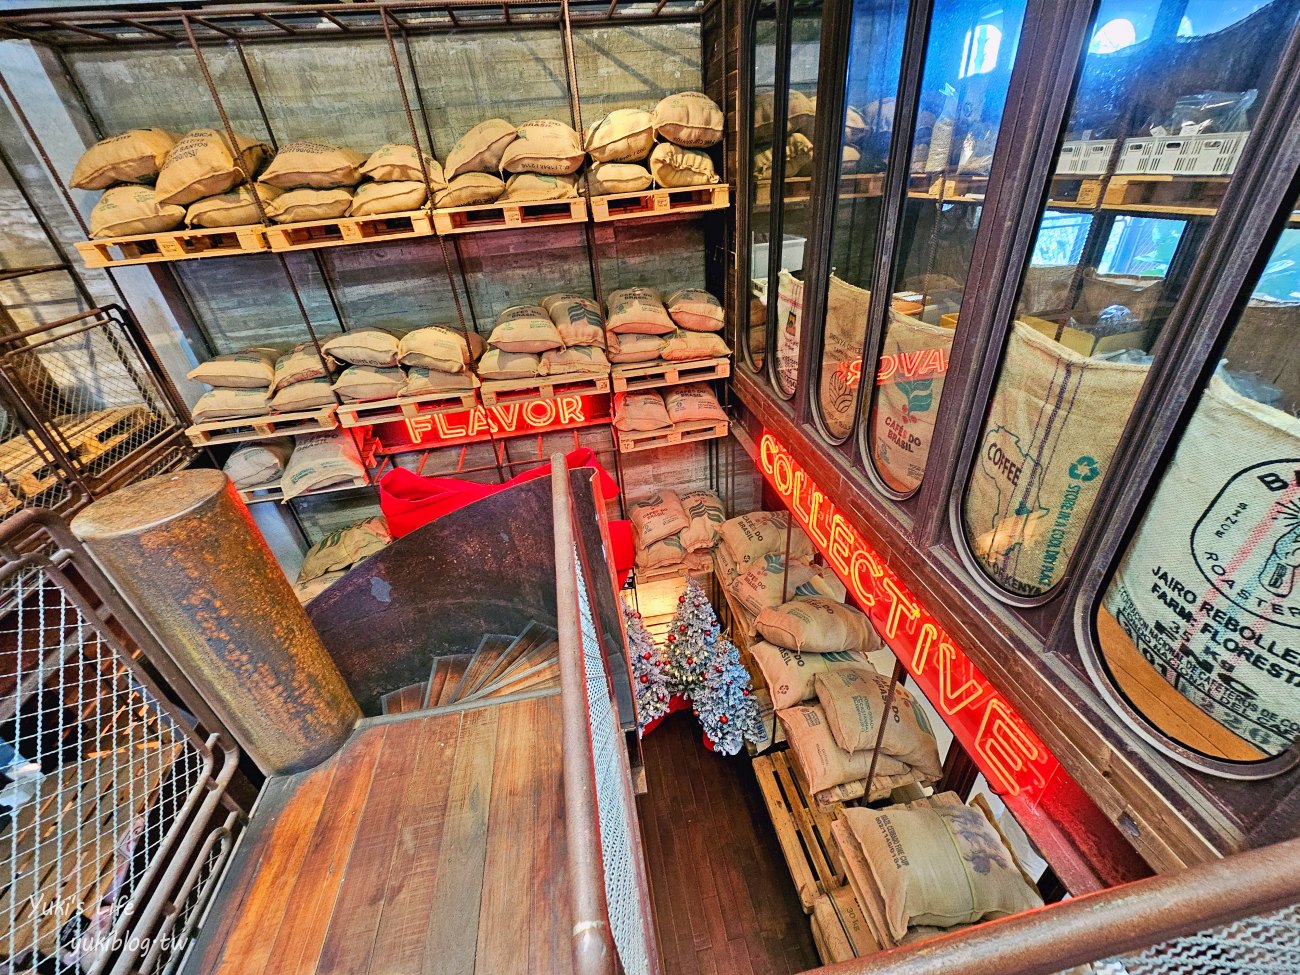 曼谷網美咖啡廳》Rolling Roasters，巨大地球超好拍，質感工業風和專業級咖啡激推！ - yukiblog.tw